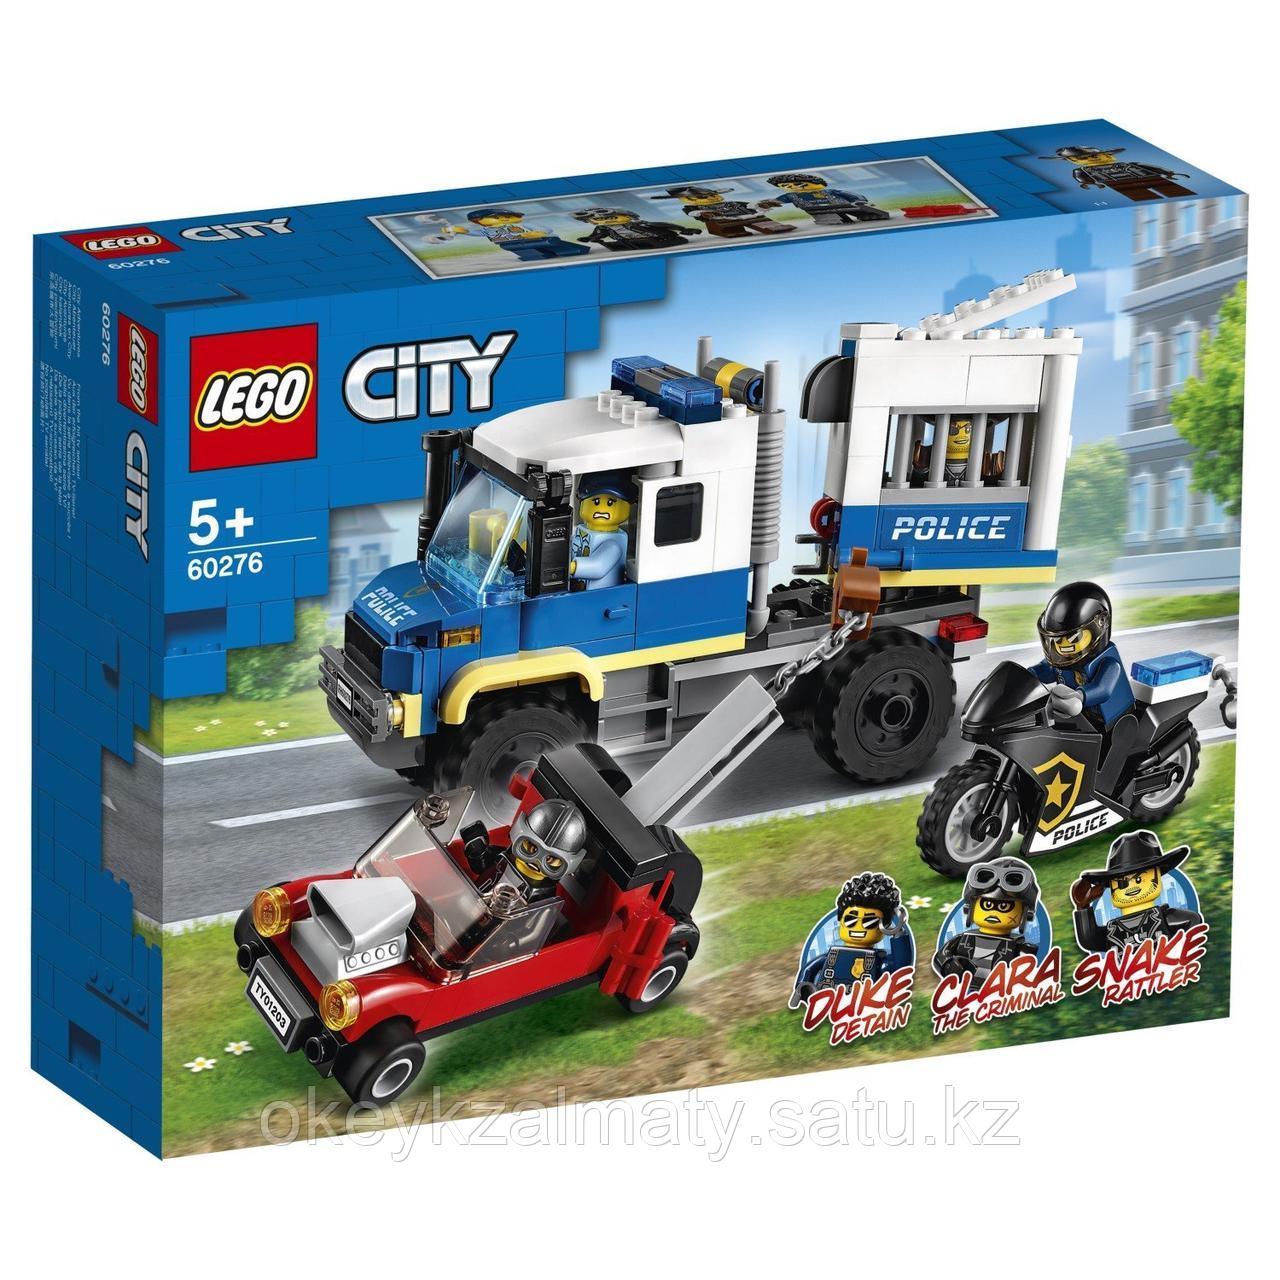 LEGO City: Транспорт для перевозки преступников 60276